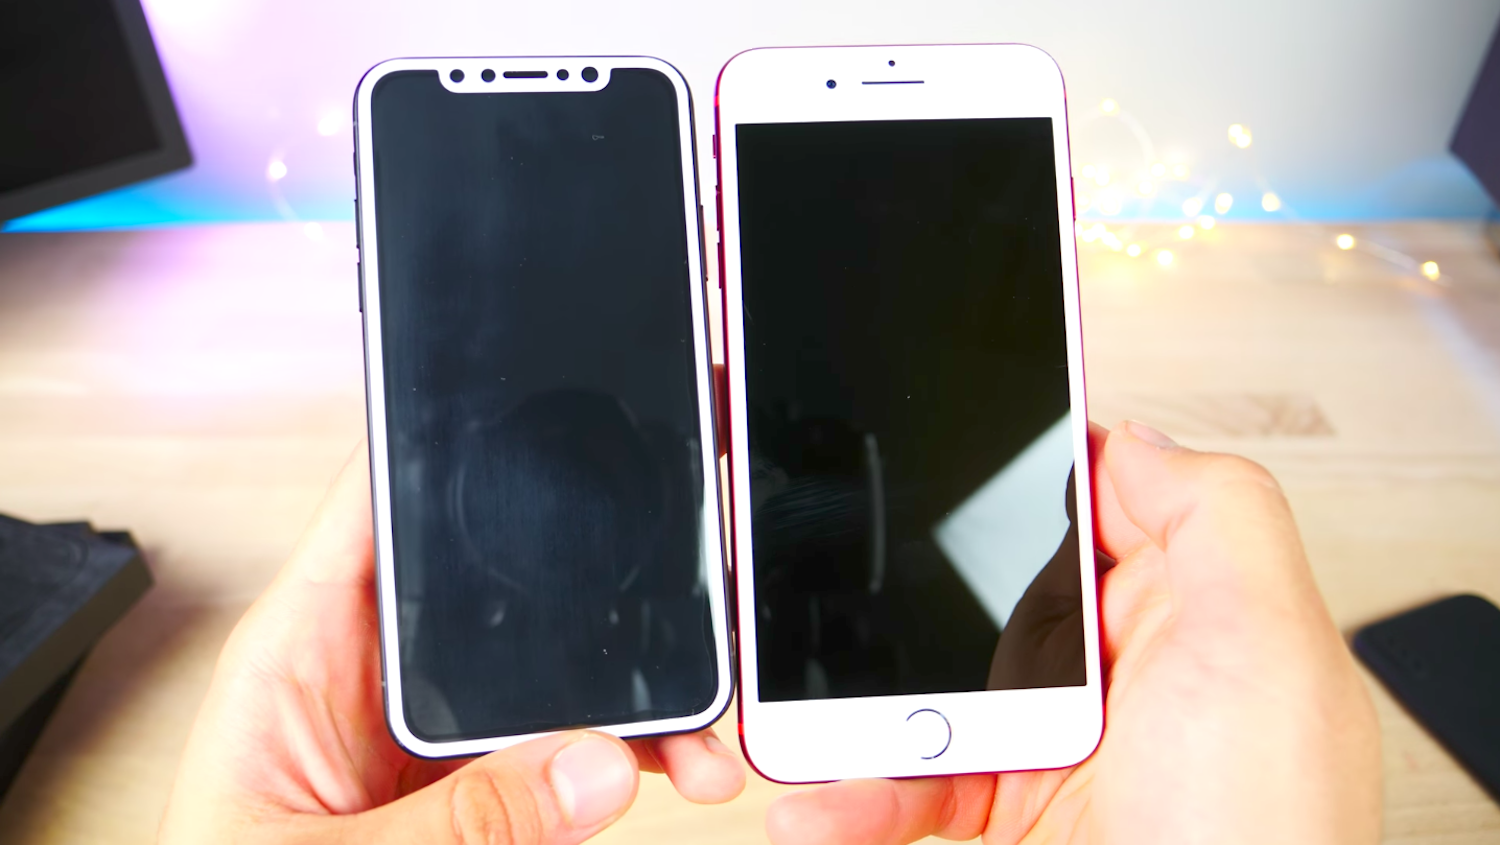 Nên mua iPhone 7 Plus lúc này hay đợi iPhone 8 lên kệ?